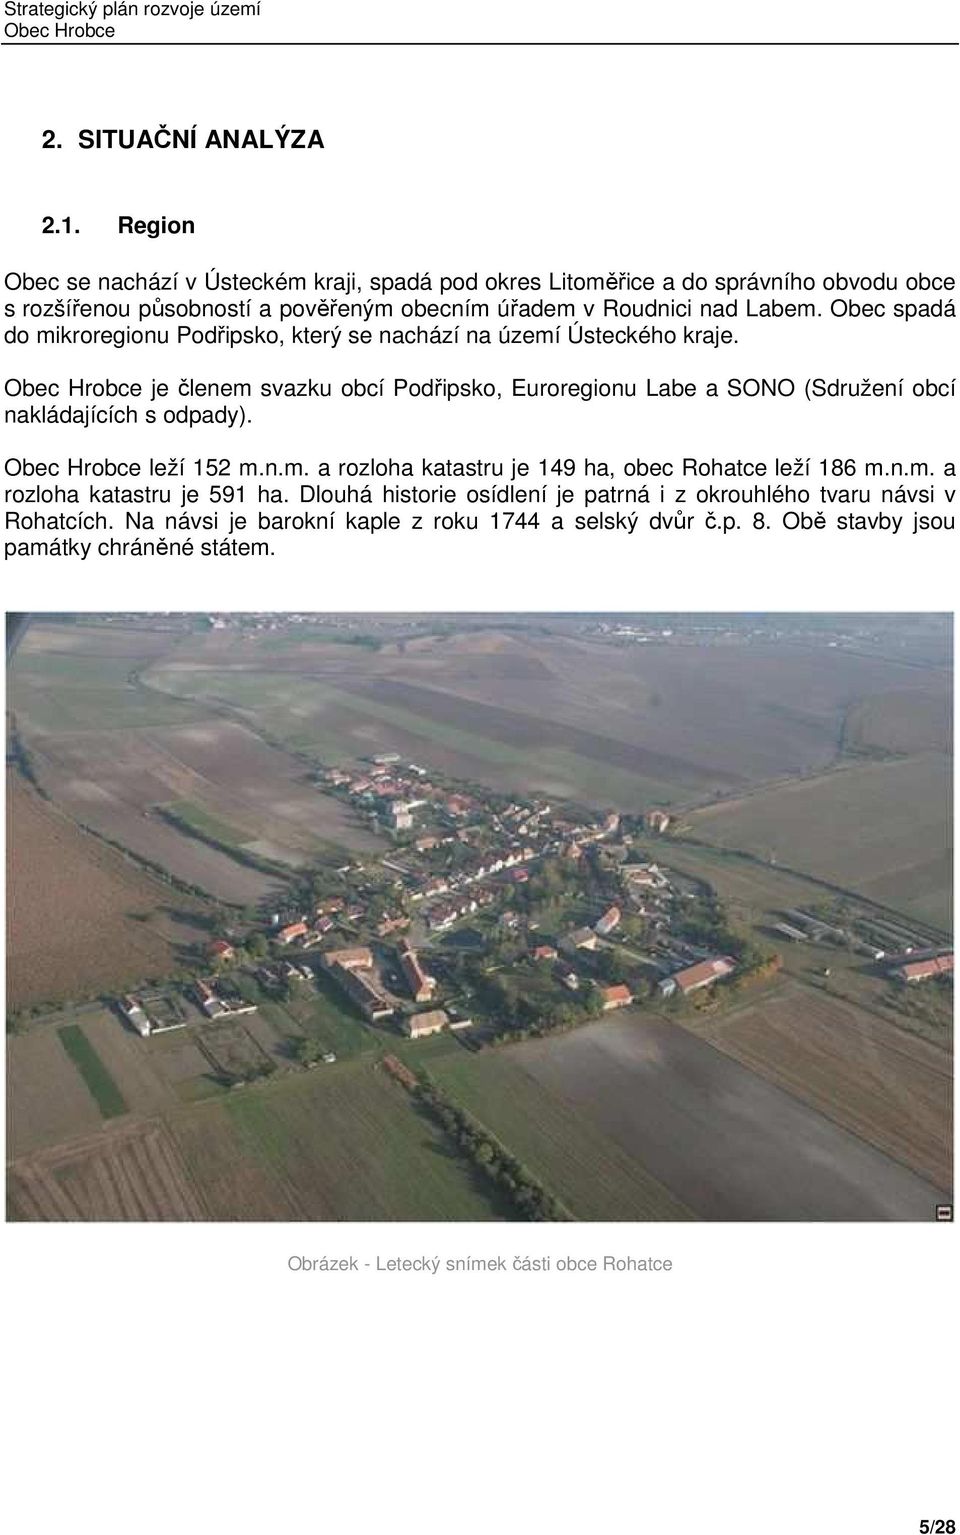 Obec spadá do mikroregionu Podřipsko, který se nachází na území Ústeckého kraje.